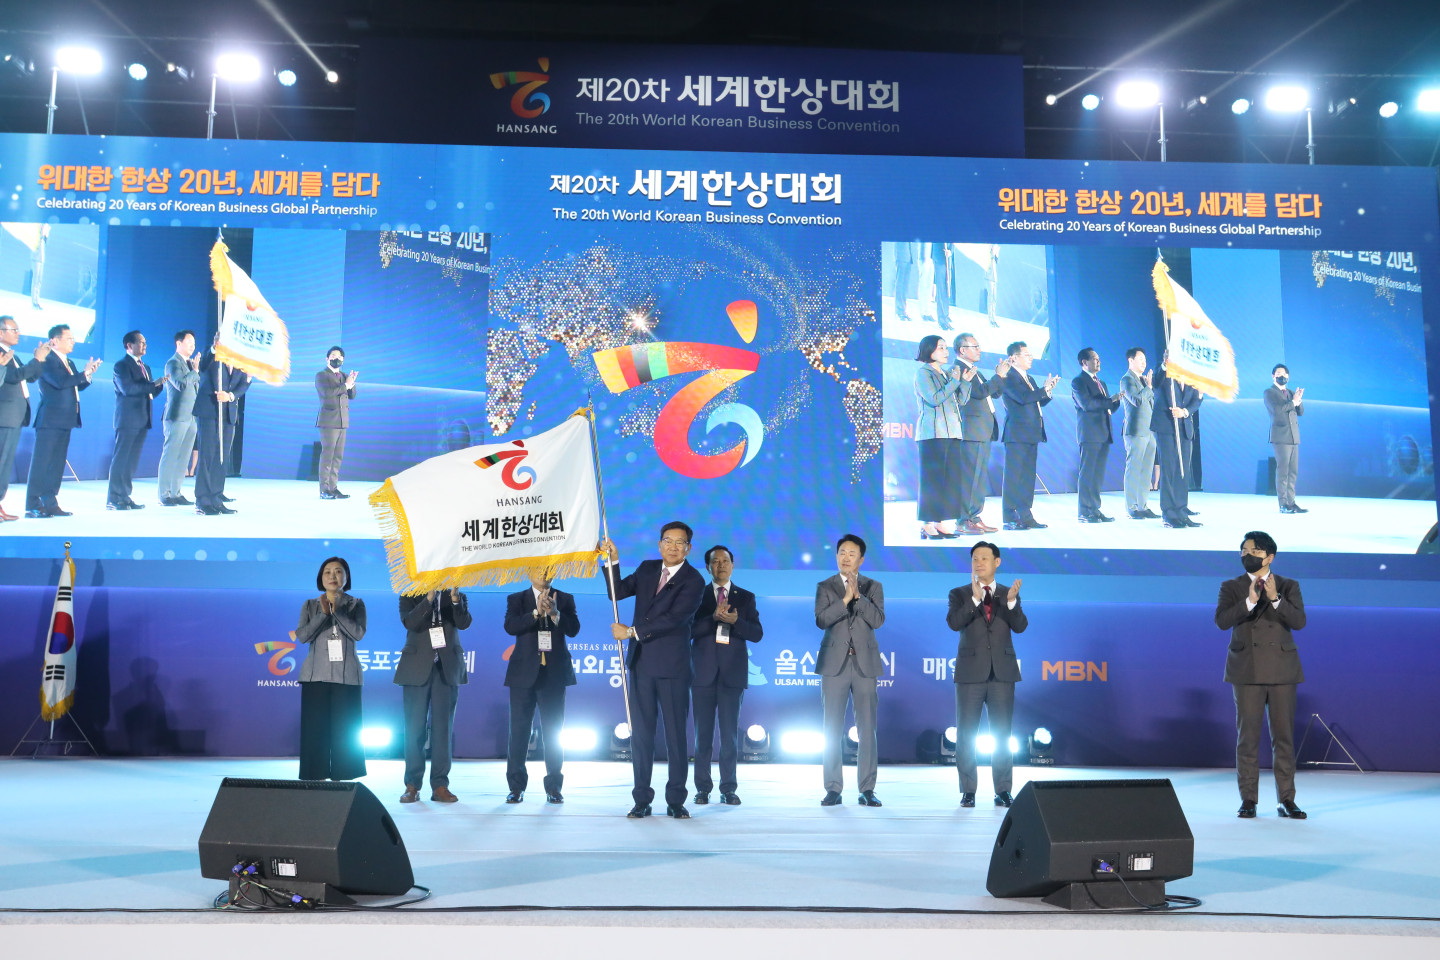 제20차 세계한상대회의 개막을 알리며 한상기를 흔드는 김점배 대회장